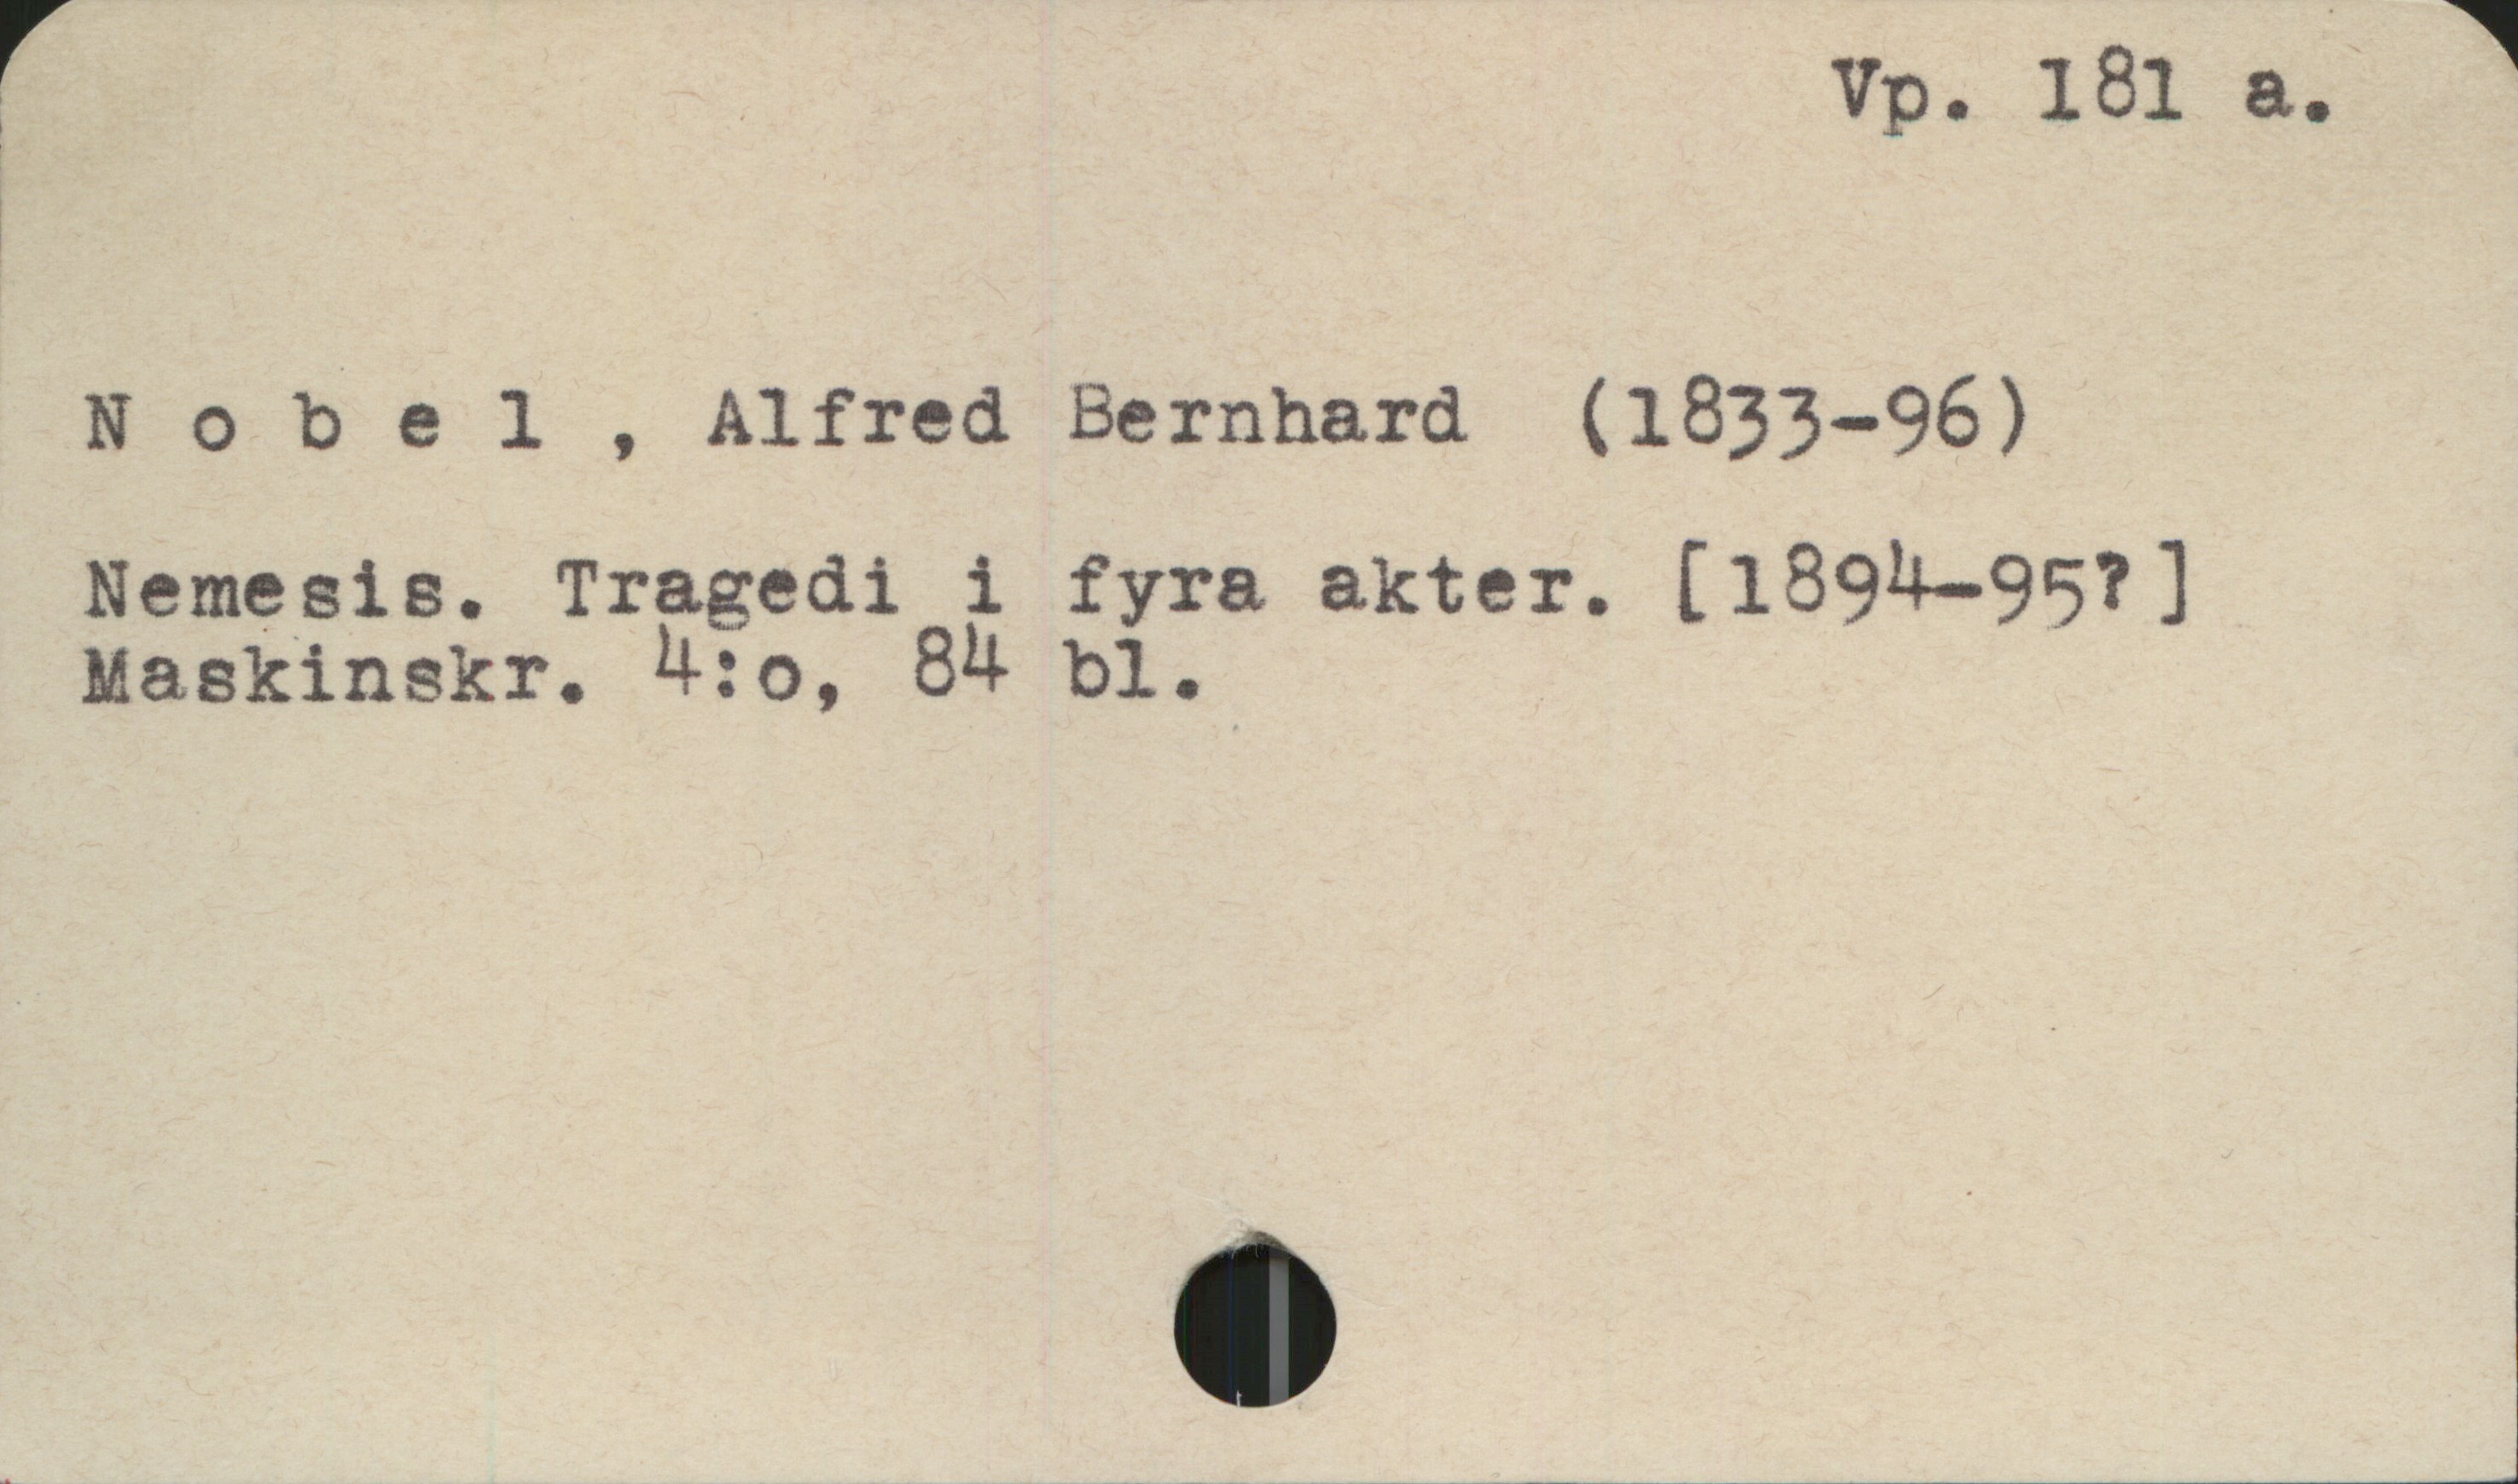 Nobel , Alfred Bernhard (1833-96) Vp. 181 a.
Nobel , Alfred Bernhard (1833-96)
Nemesis. Tragedi i fyra akter. [1894-957 ]
Maskinskr. 4:o, 84 bl.